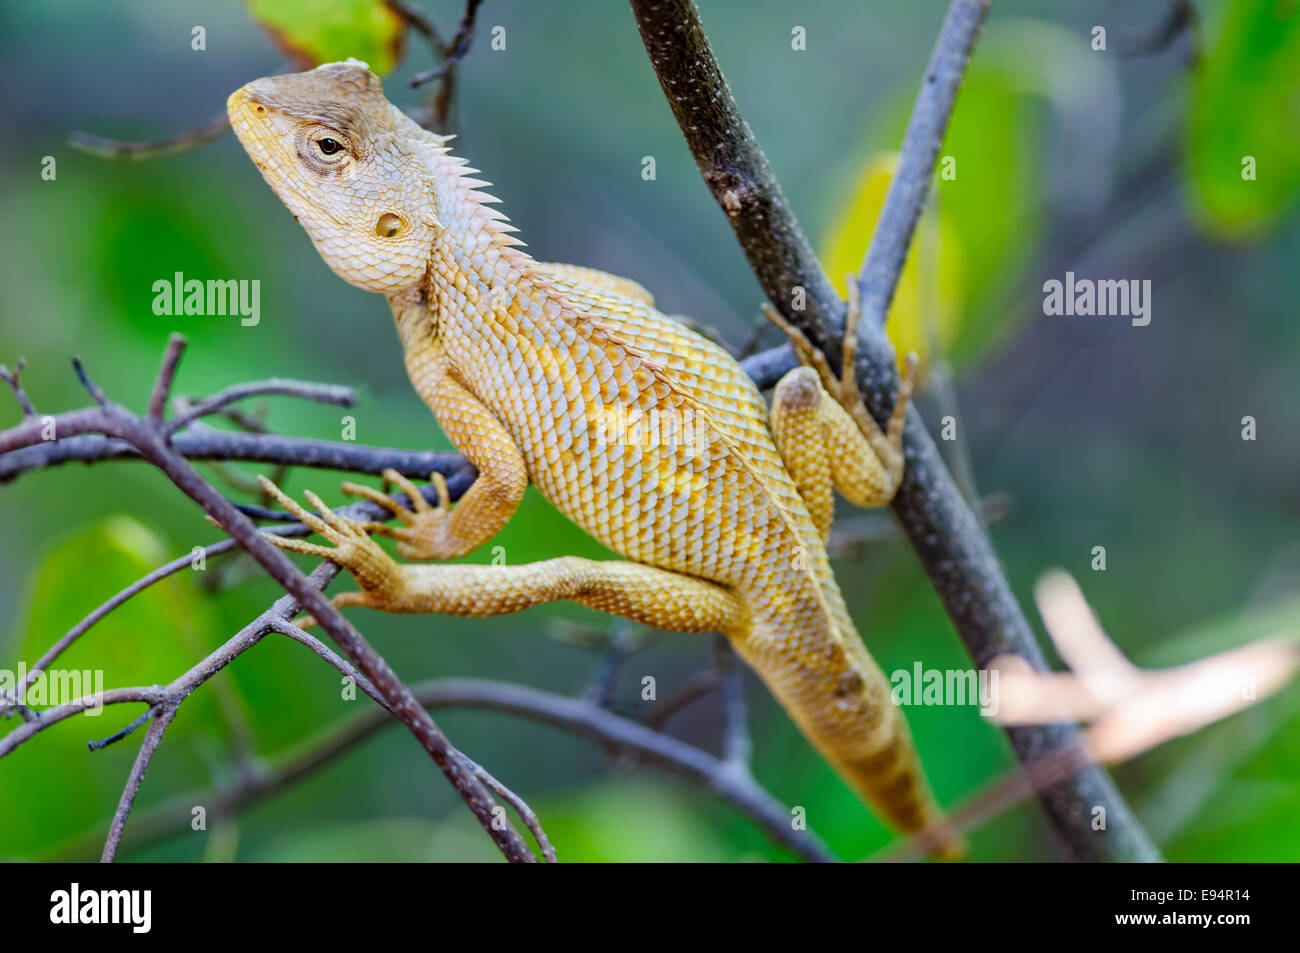 Oriental Garden Lizard en attente sur une branche d'arbre Banque D'Images